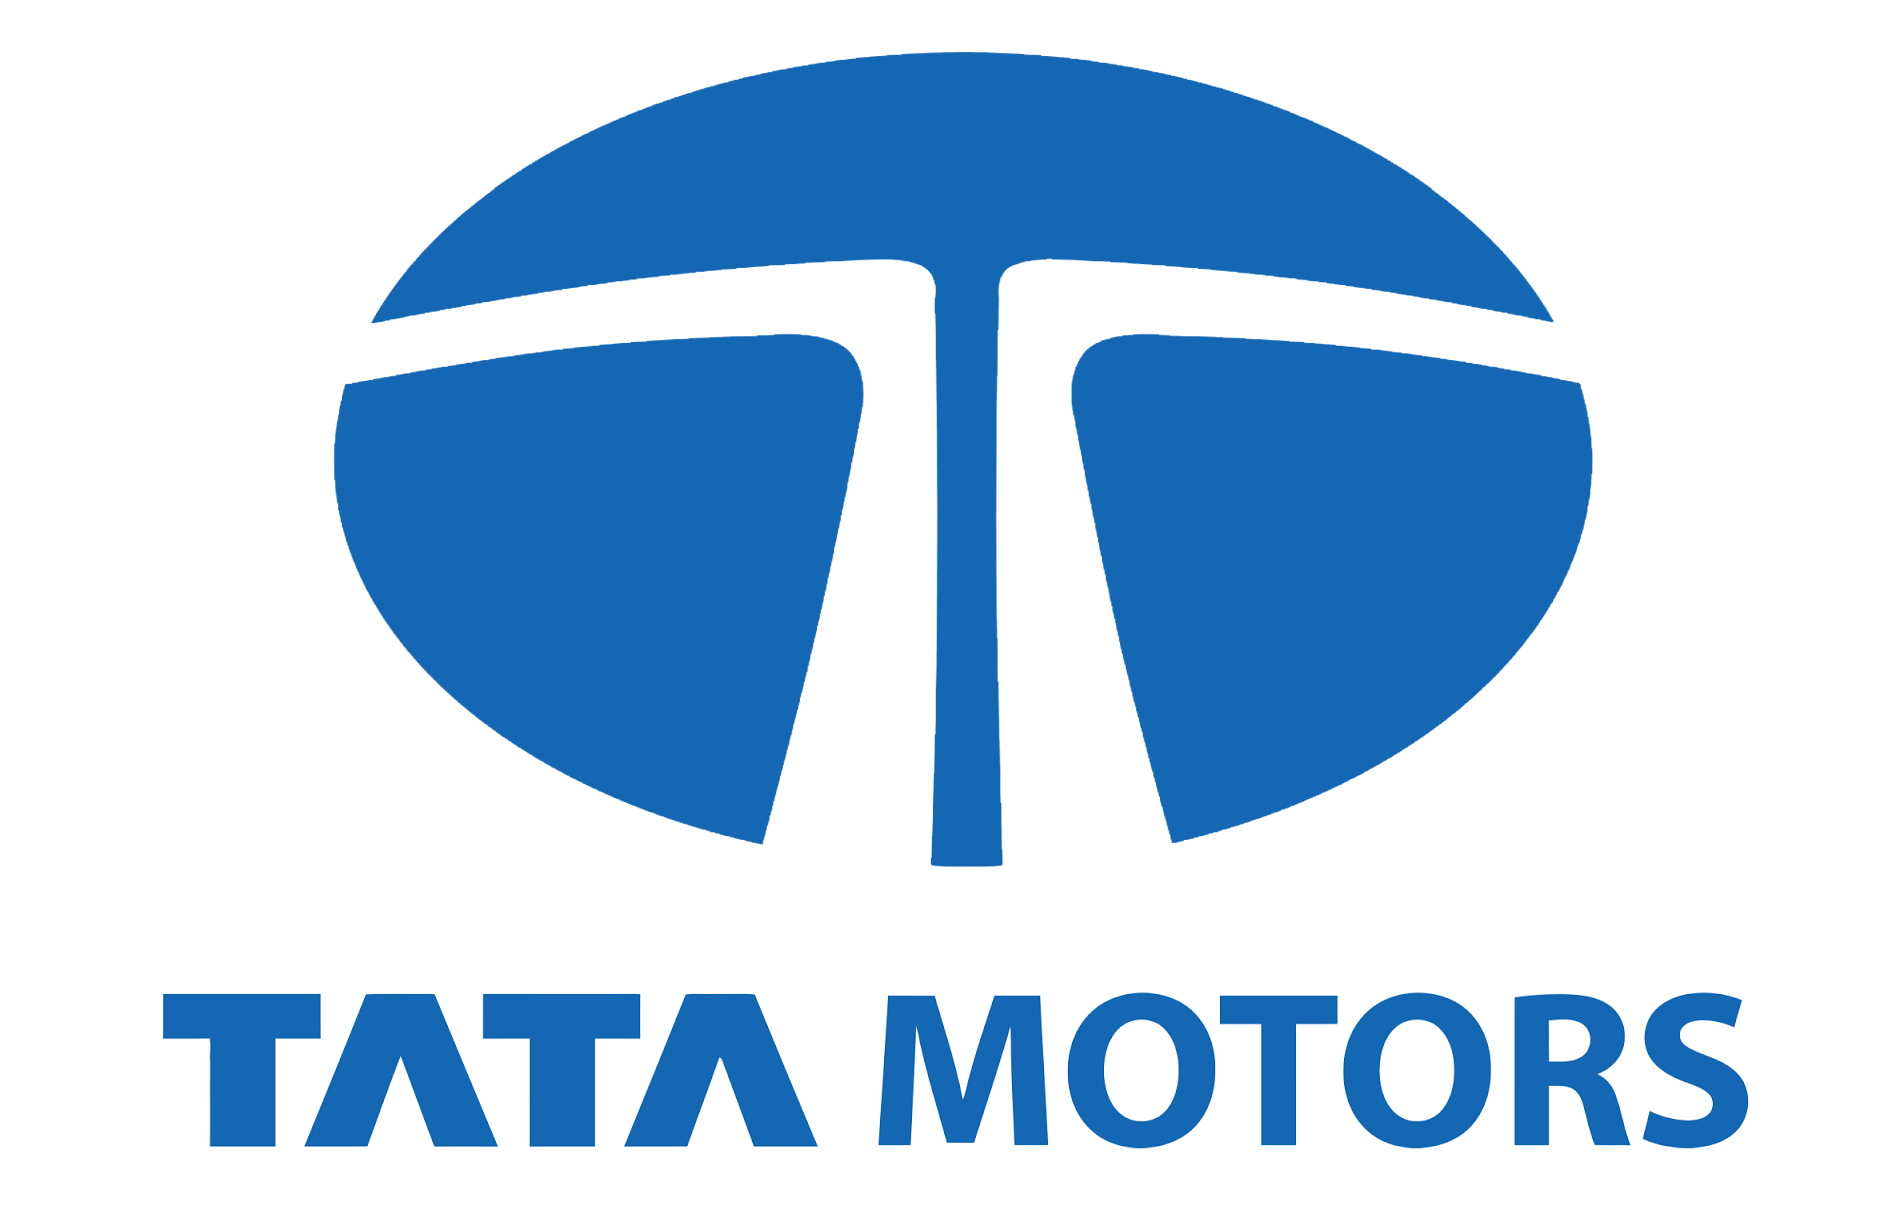 Tata Motors Cars Showroom - Tiwari Automobiles - Logo